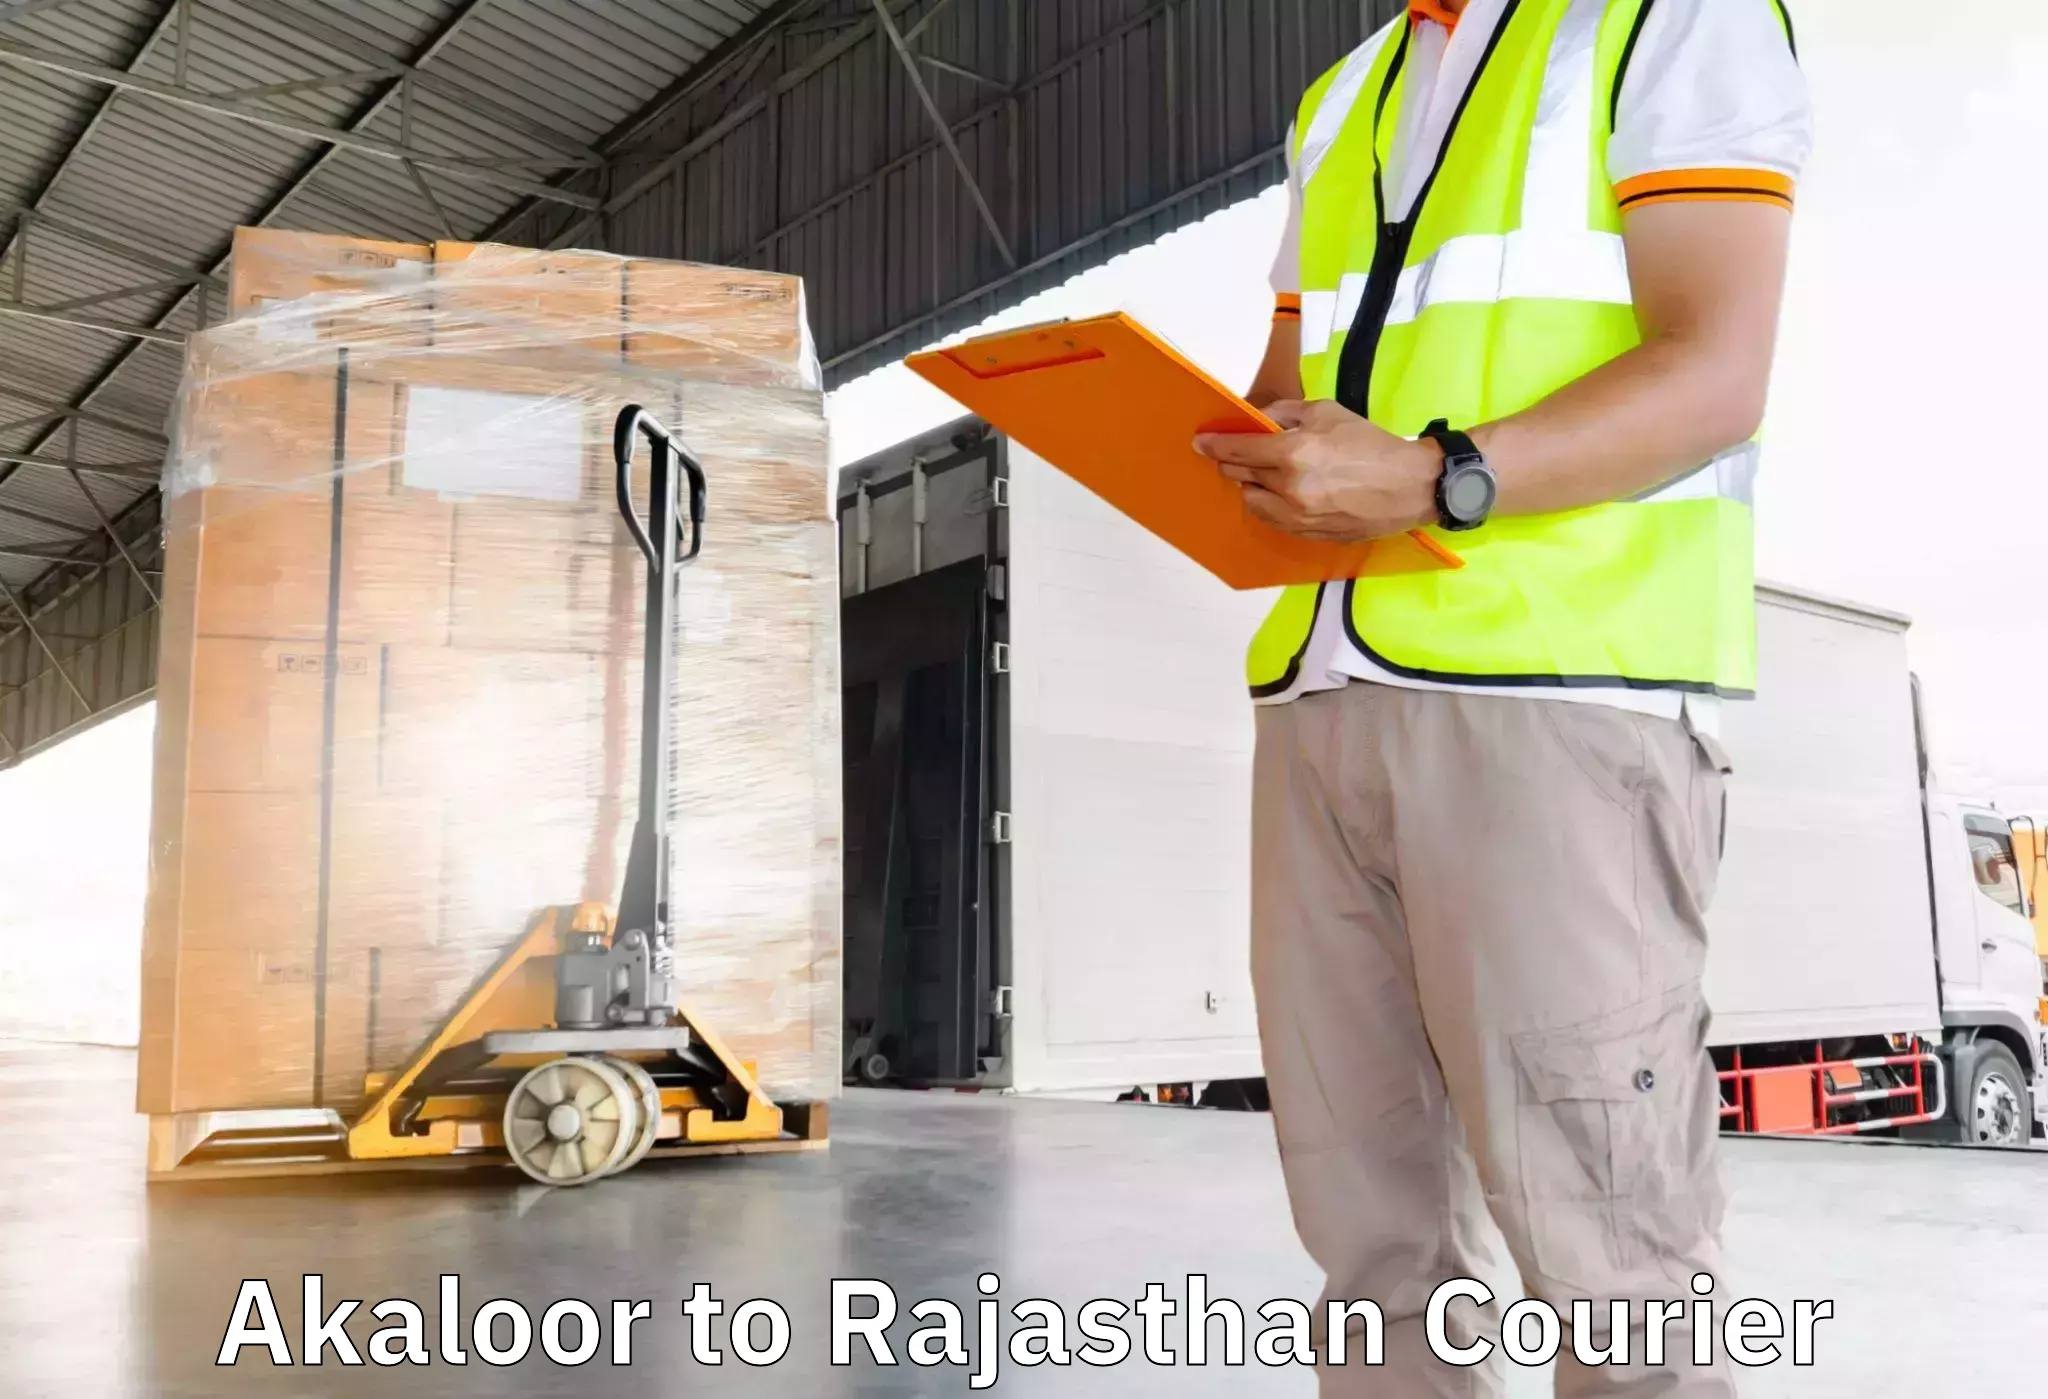 Efficient moving company Akaloor to Churu